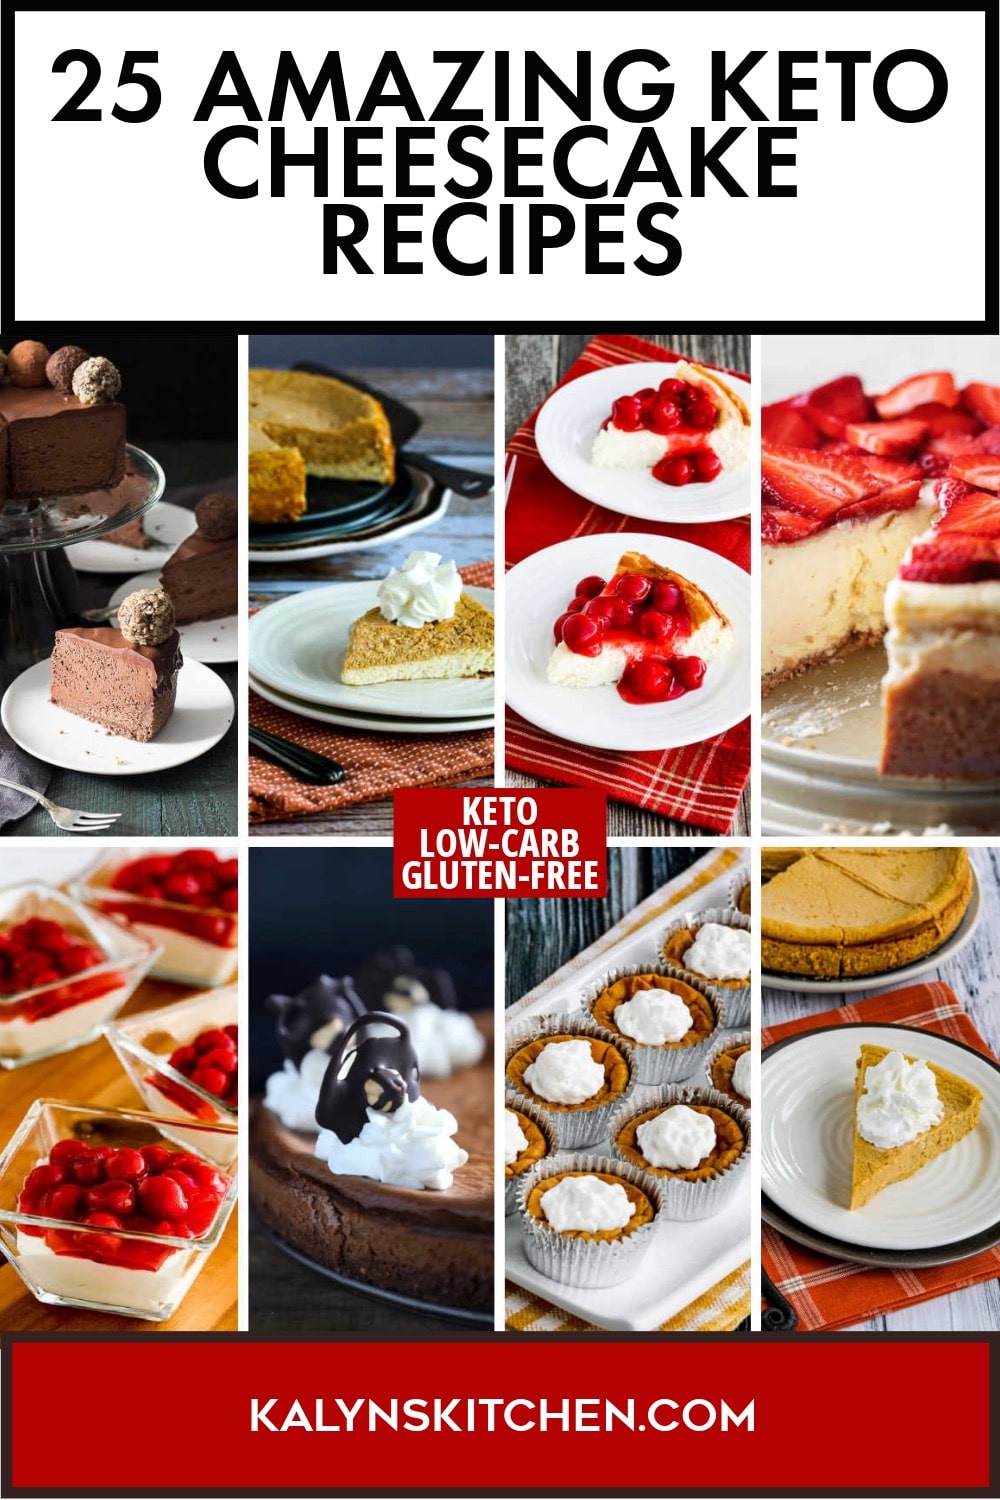 Pinterest image of 25 Amazing Keto Cheesecake Recipes